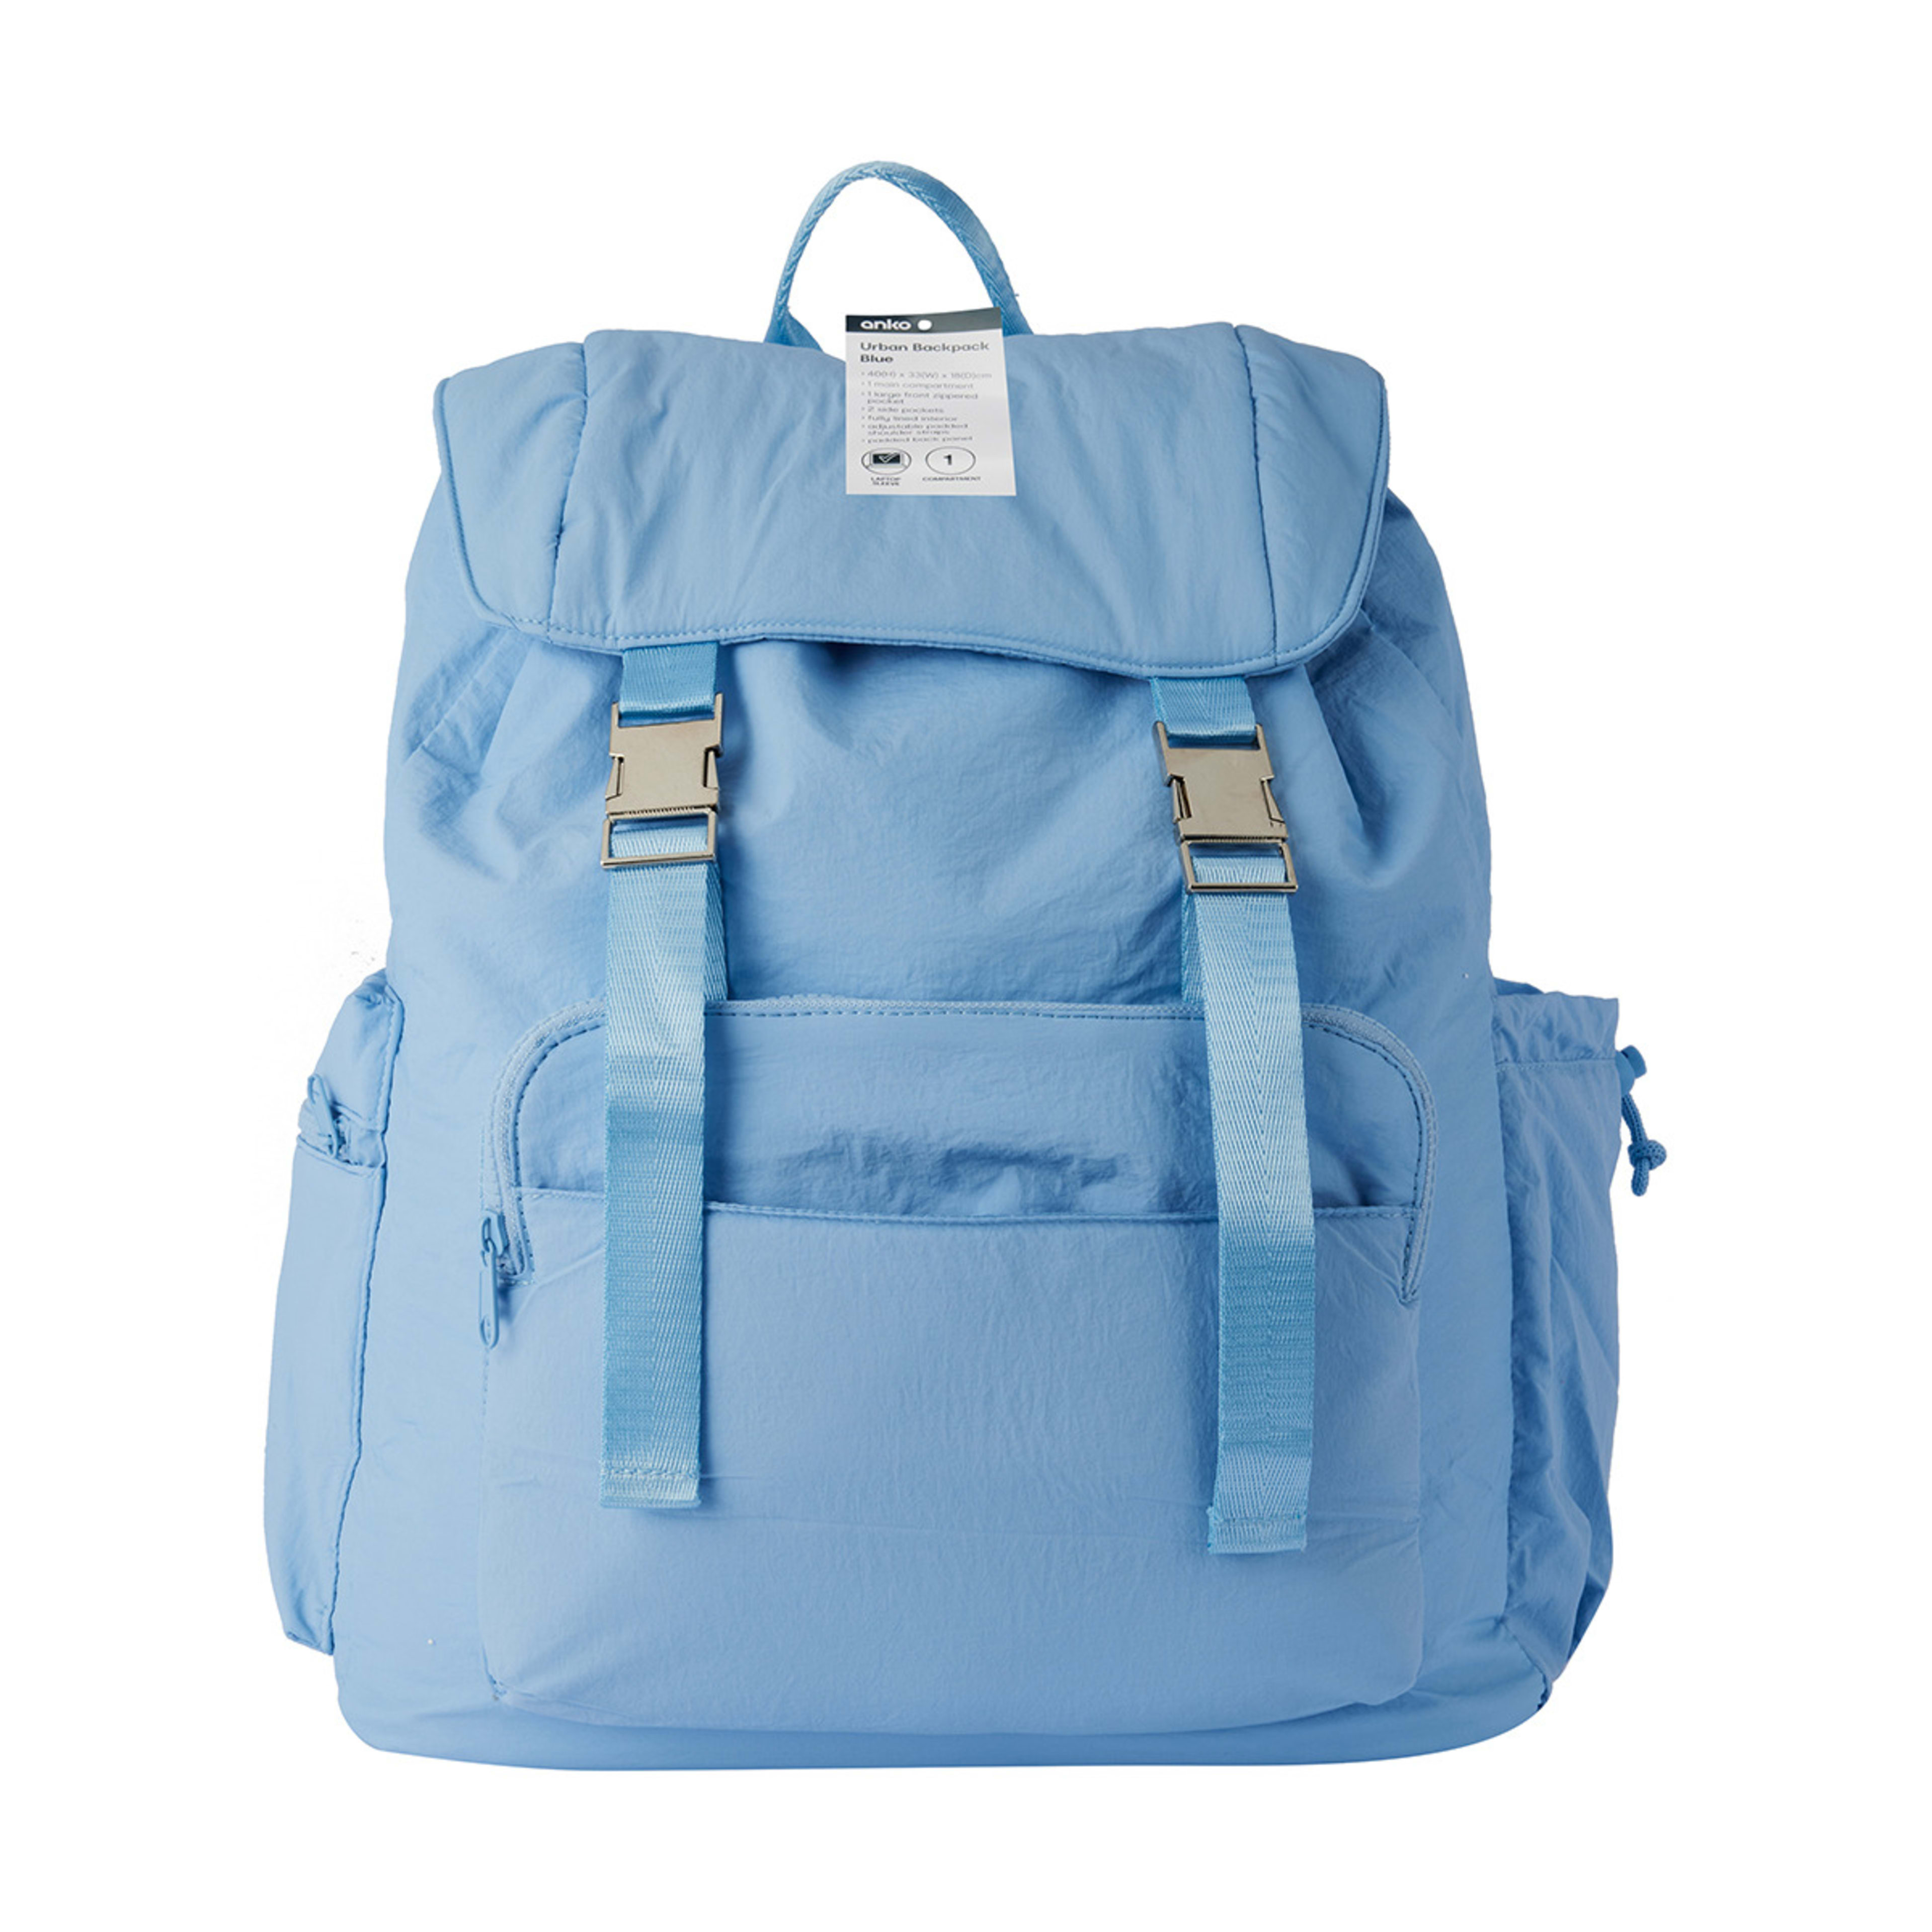 Urban Backpack - Blue - Kmart